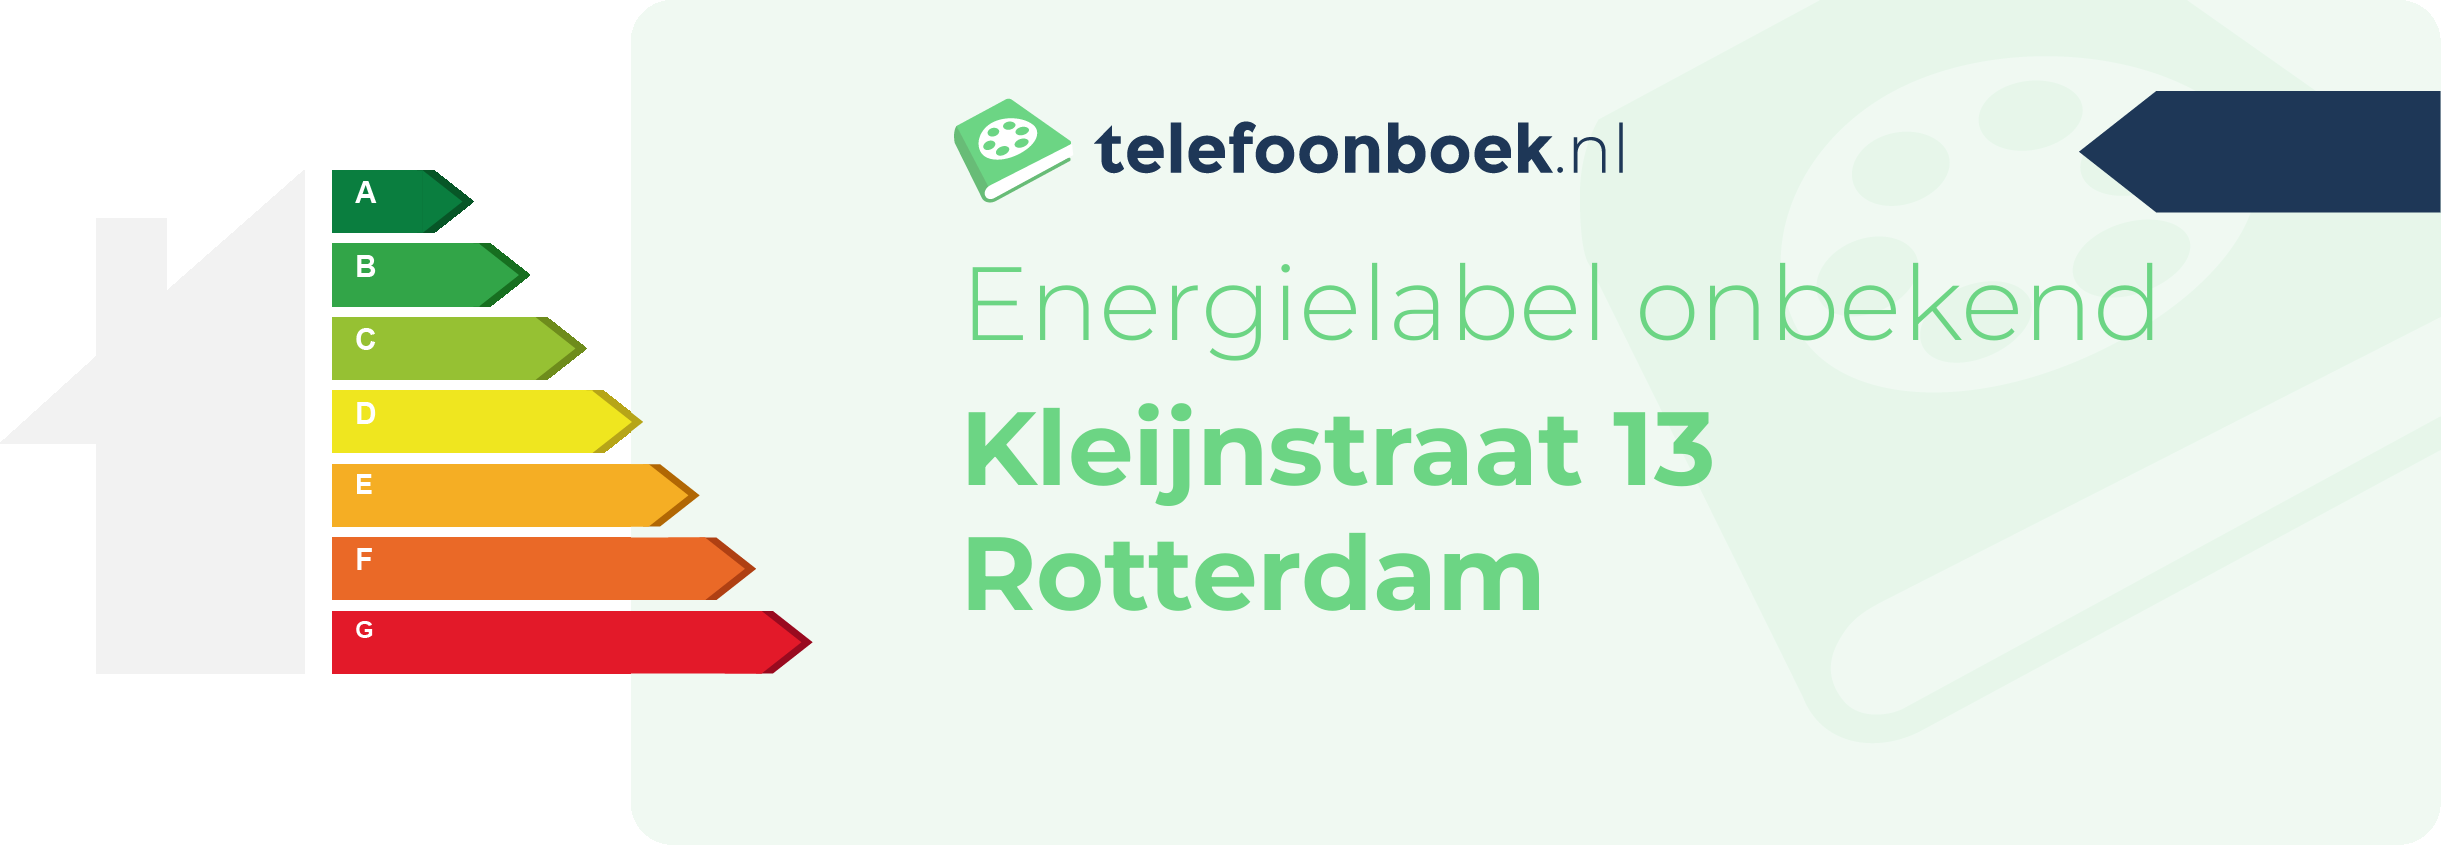 Energielabel Kleijnstraat 13 Rotterdam